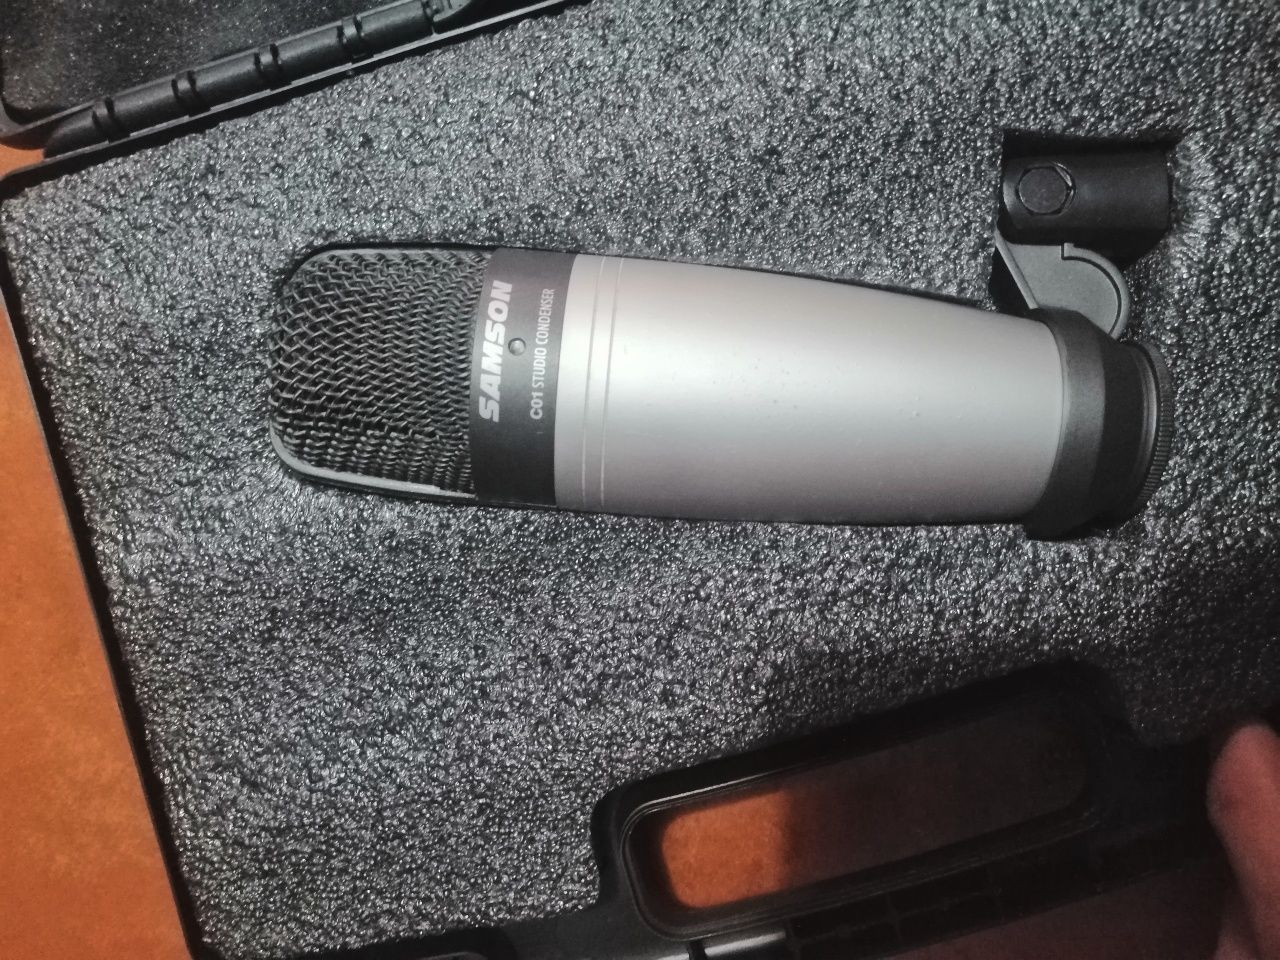 Microfone Samson C01